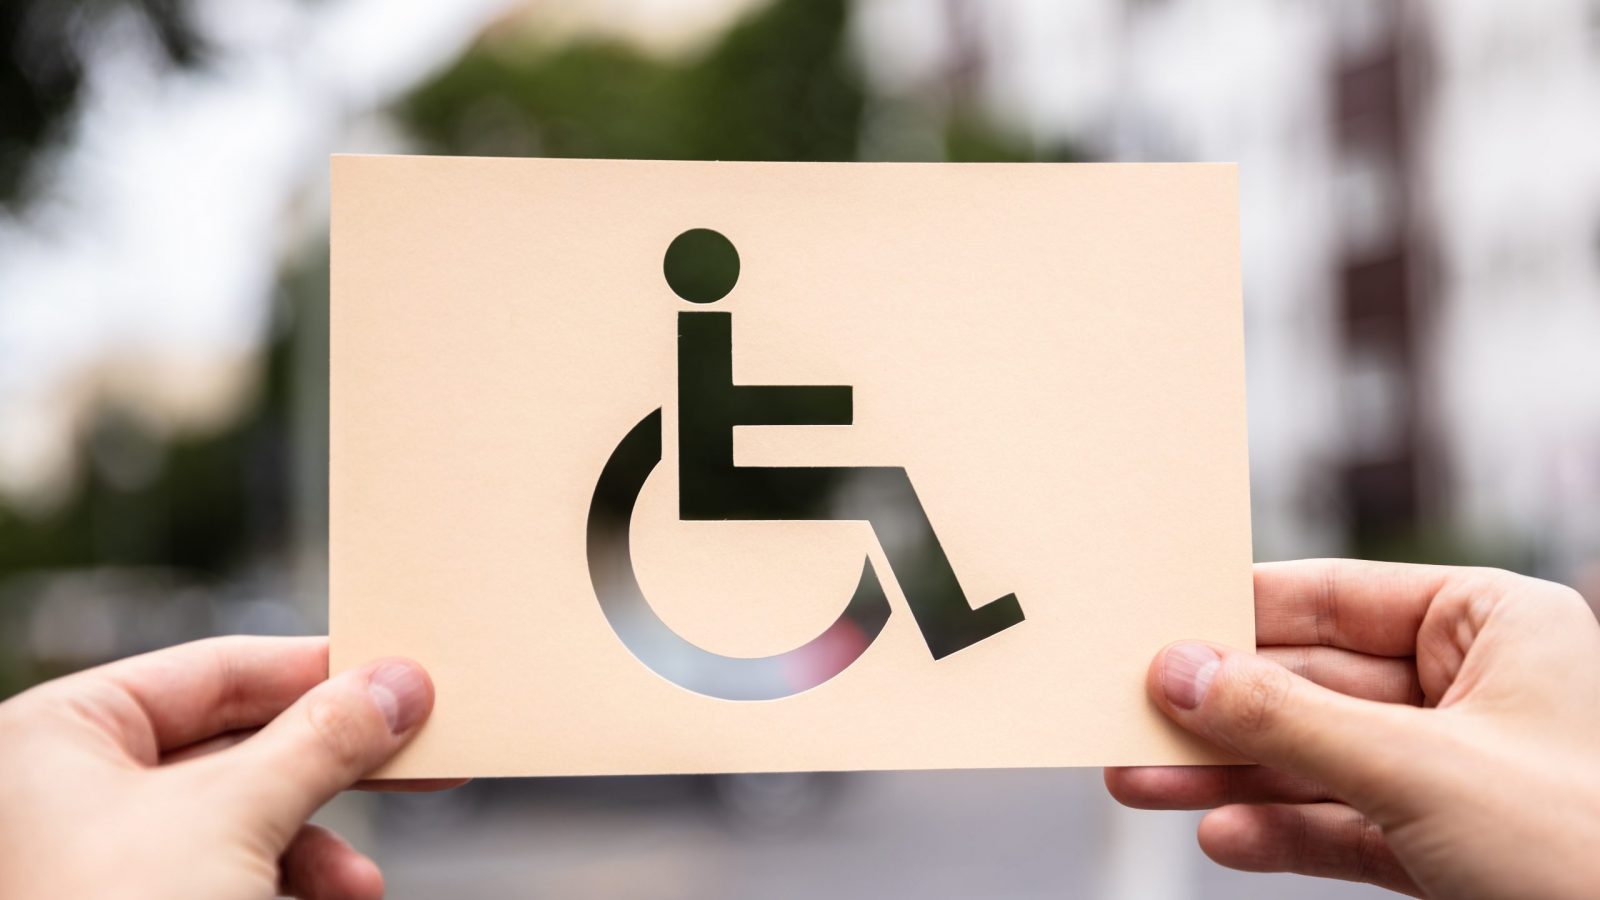 Guia orienta empresas a incluir pessoas com deficiência no mercado formal de trabalho